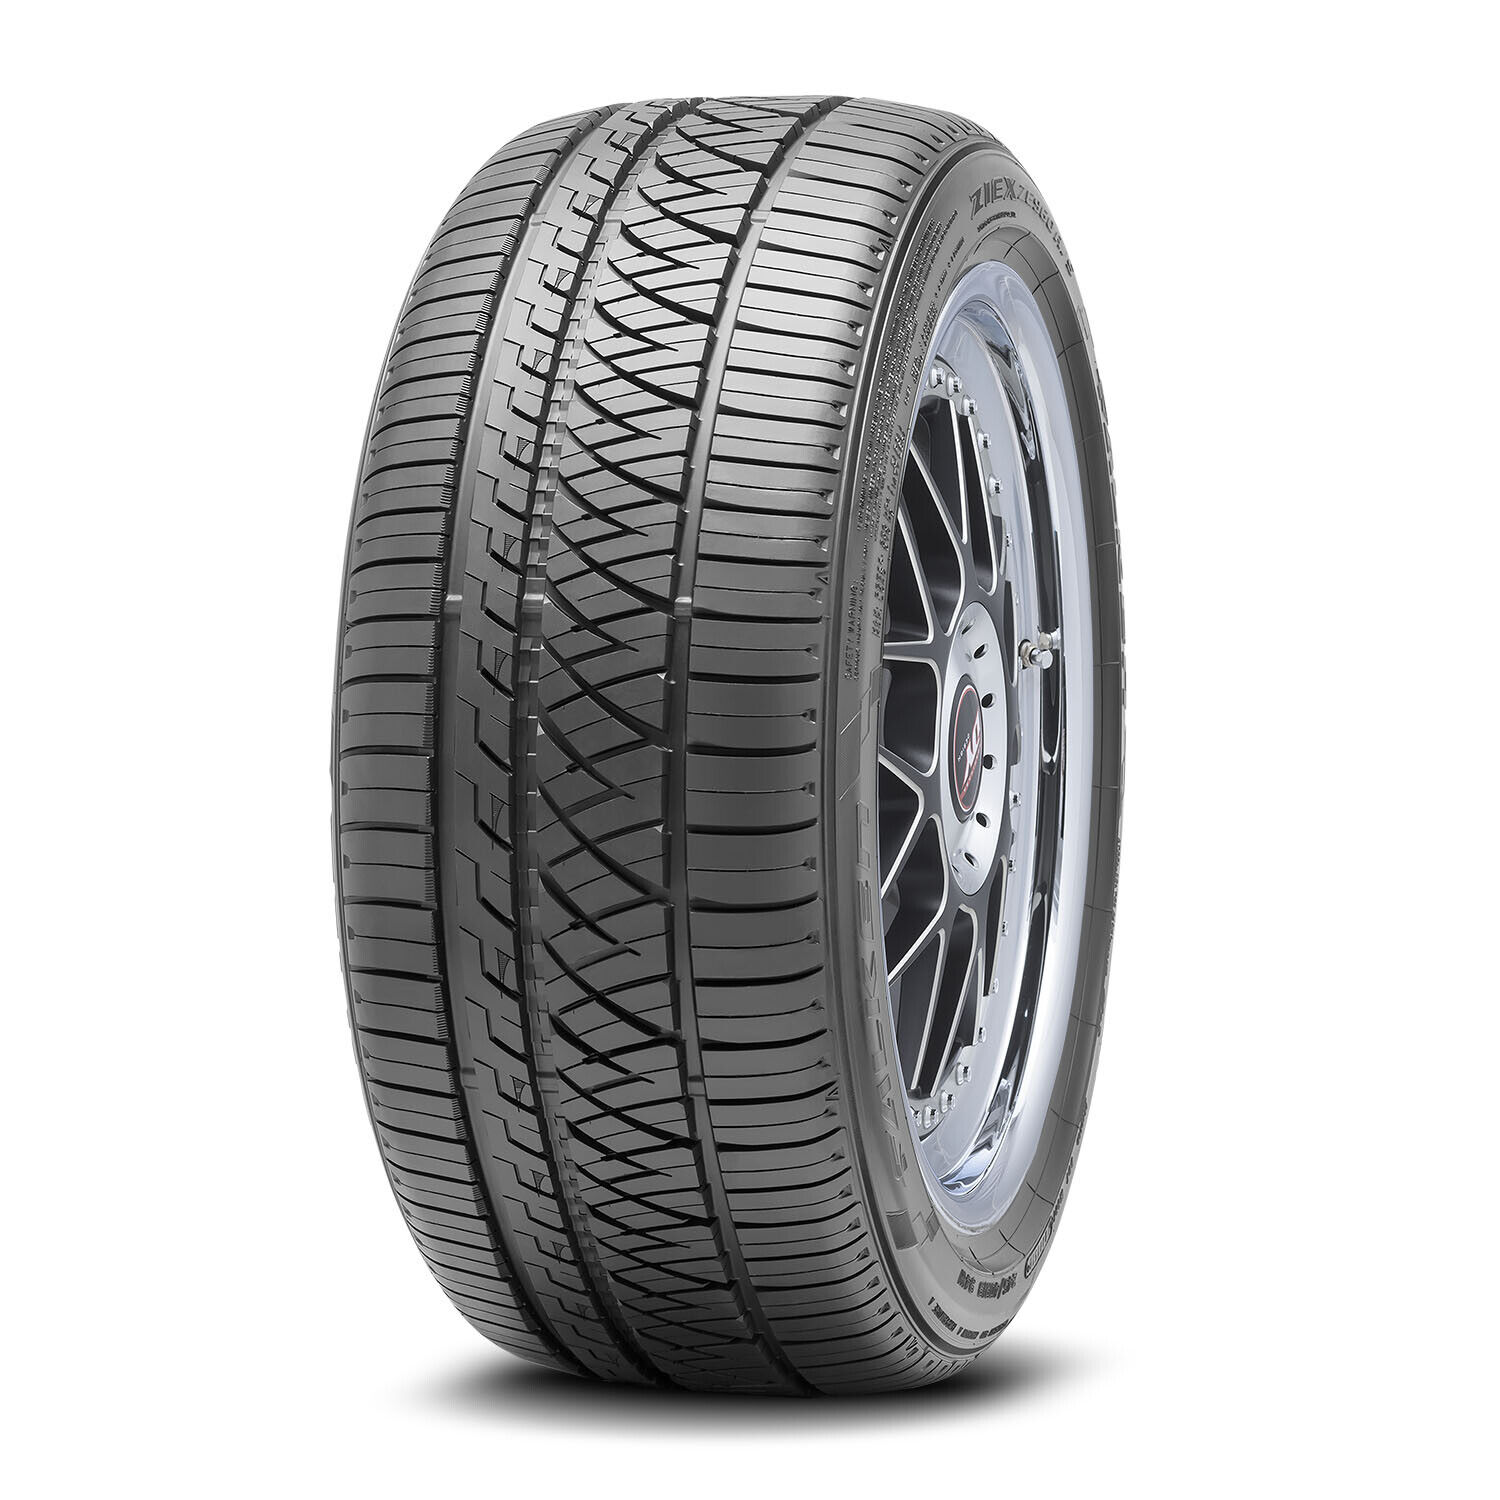 4 New Falken Ziex Ze960 A/s  - 245/50r16 Tires 2455016 245 50 16